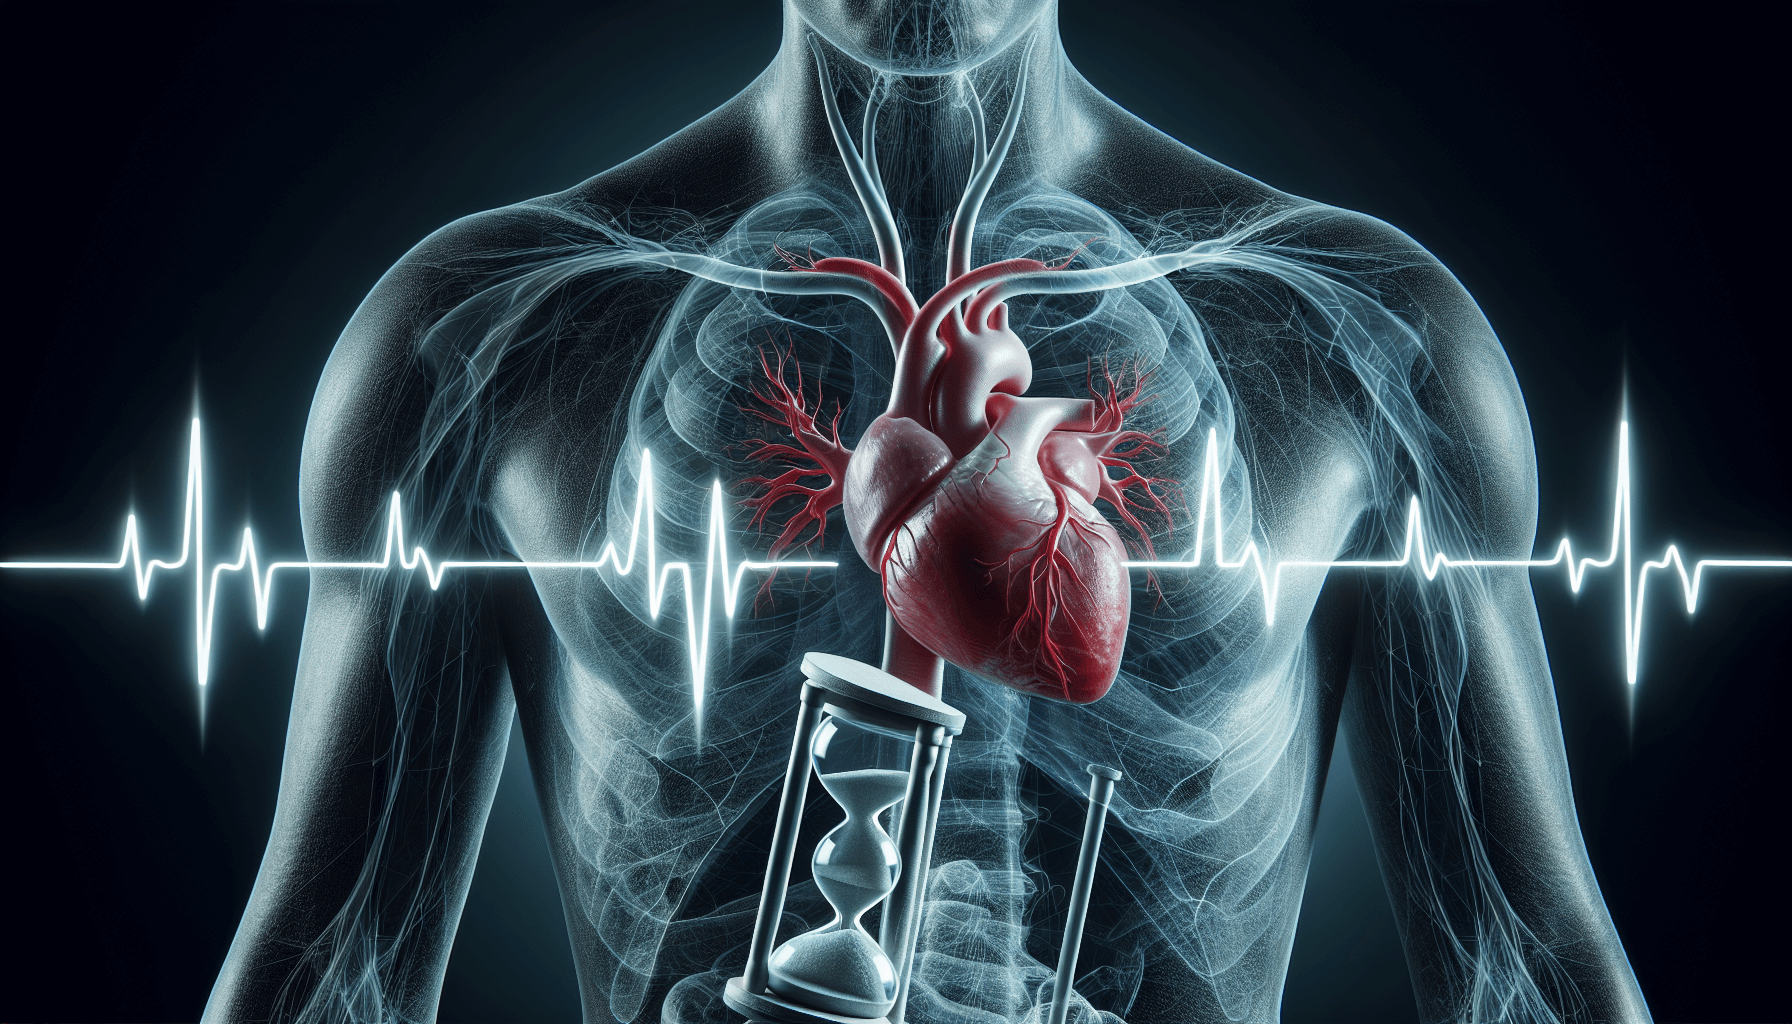 Atriyal fibrilasyonu simgeleyen düzensiz ritmi olan bir kalbin çizimi